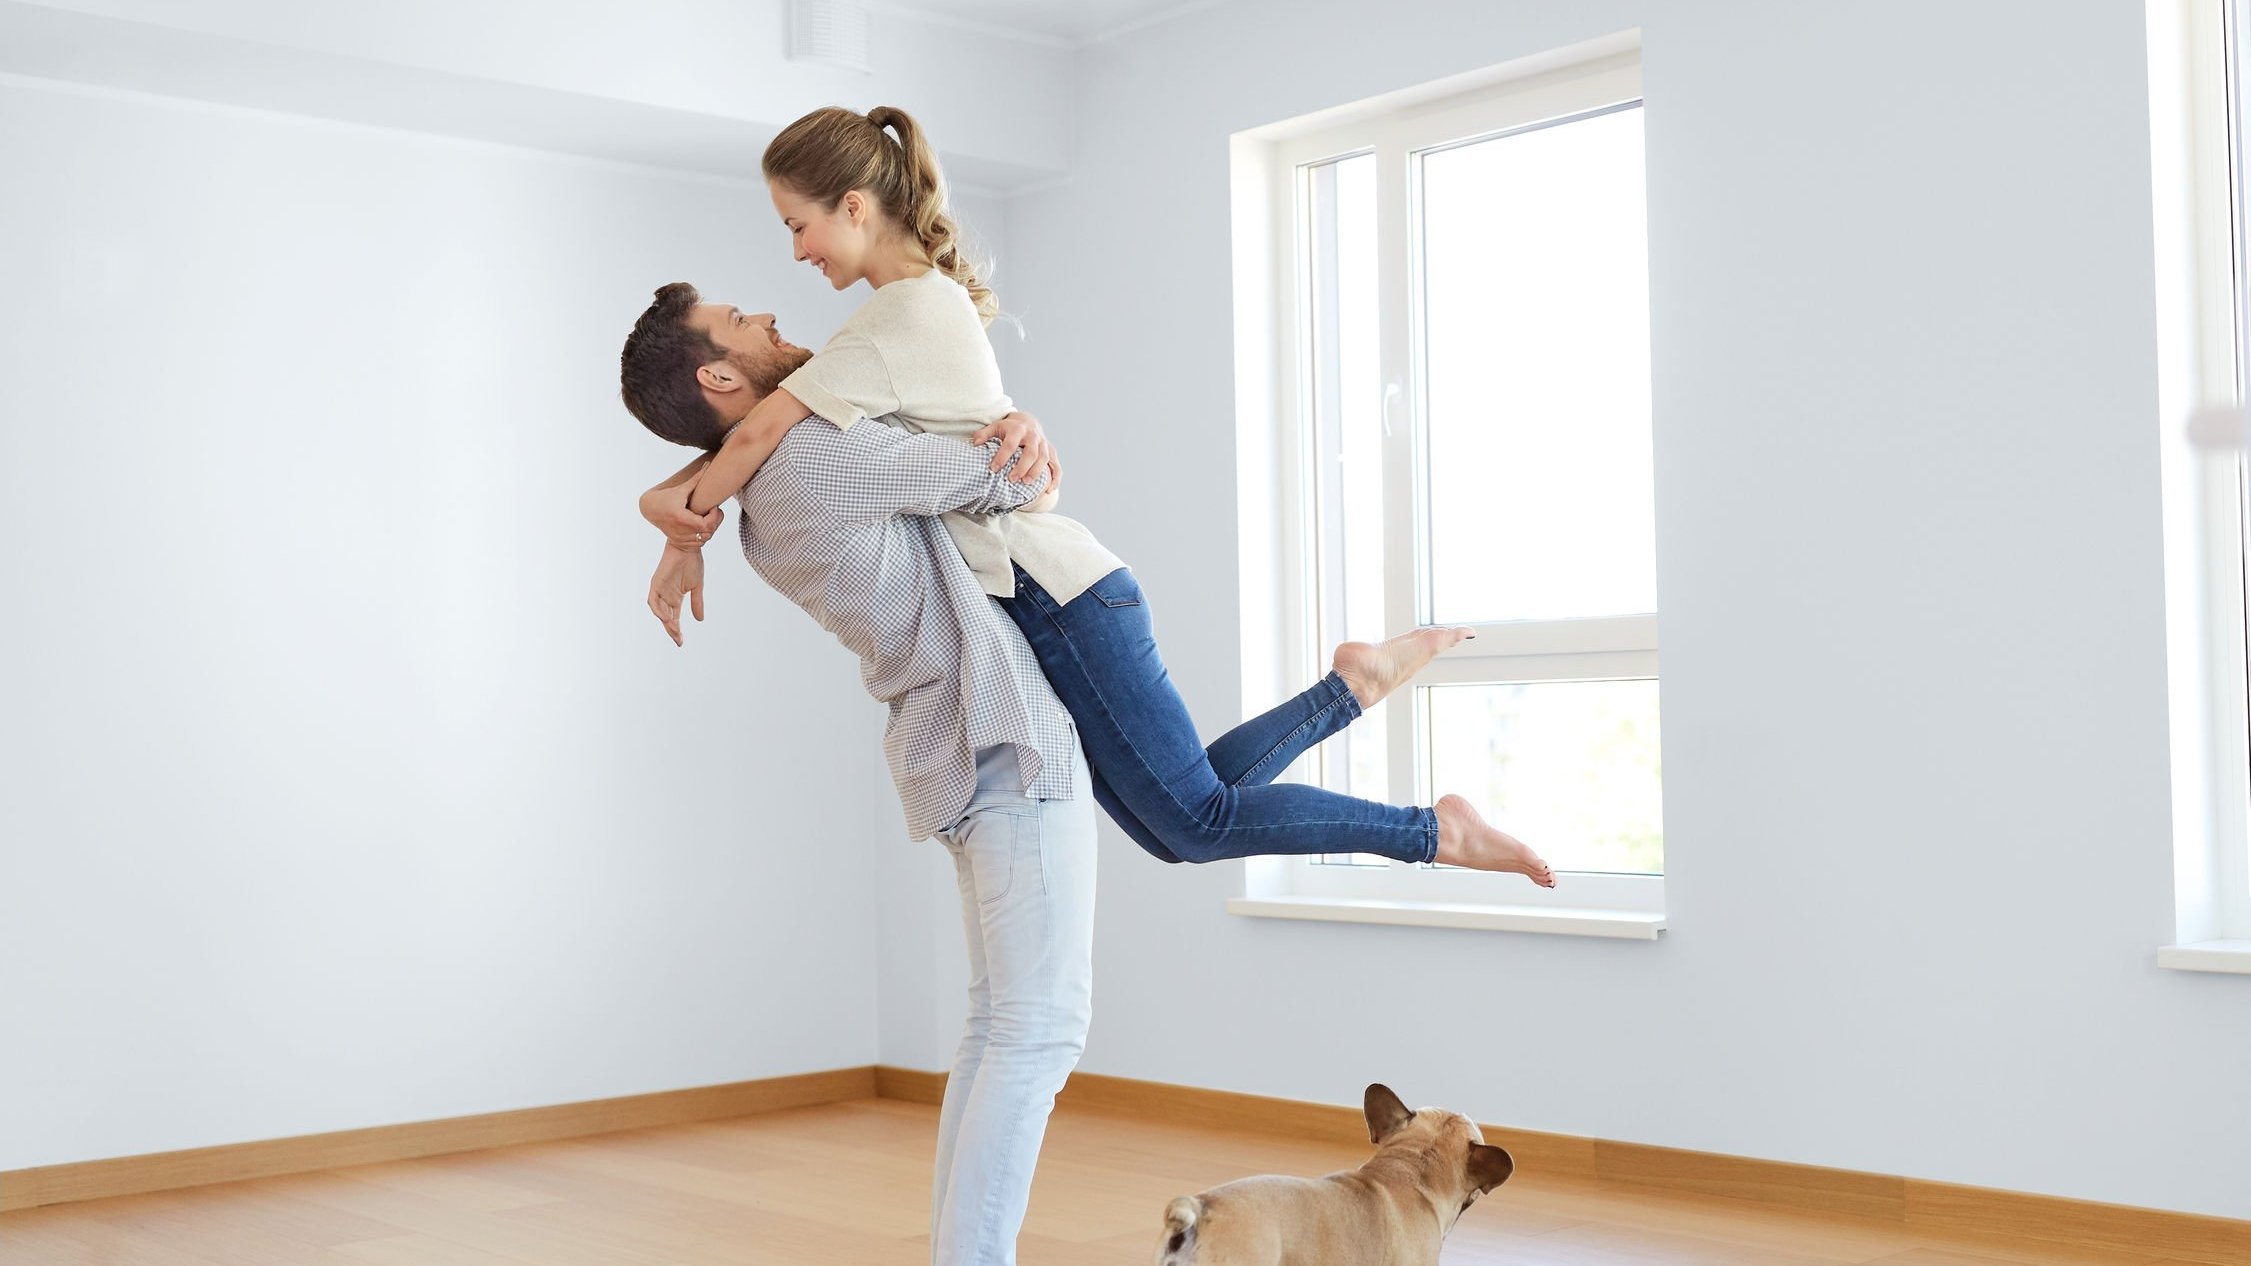 Homem levantando mulher enquanto a abraça, em um cômodo vazio, com piso de madeira e paredes brancas. Um cachorro no chão olha a cena.